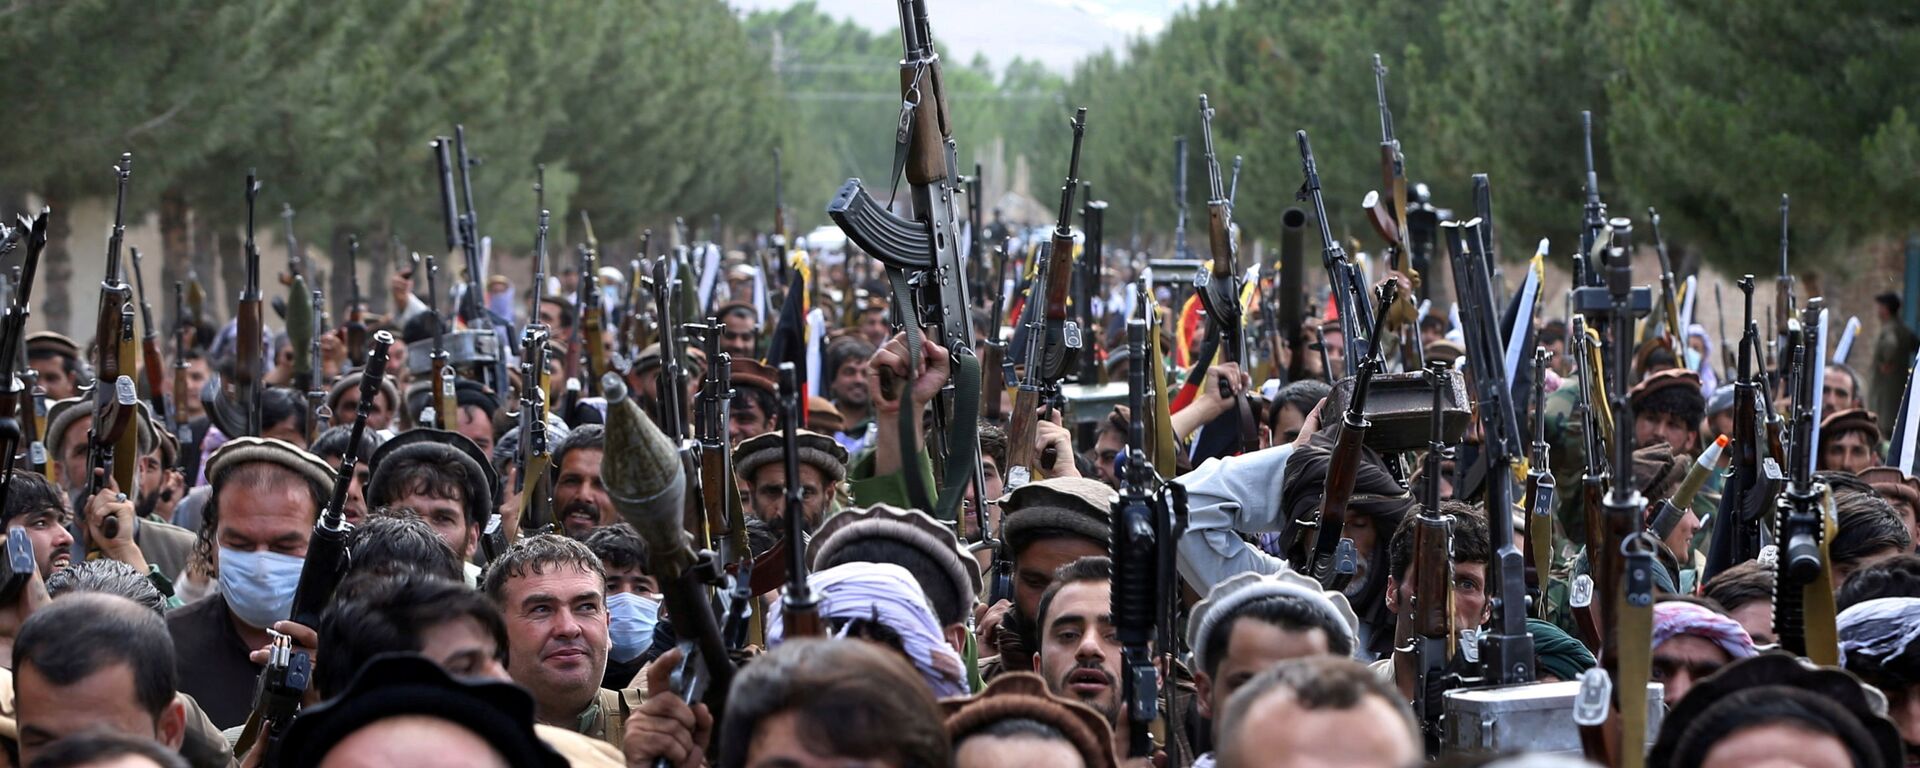 Сотни вооруженных людей на окраине Кабула, Афганистан, 23 июня 2021 года. - Sputnik Азербайджан, 1920, 06.09.2021